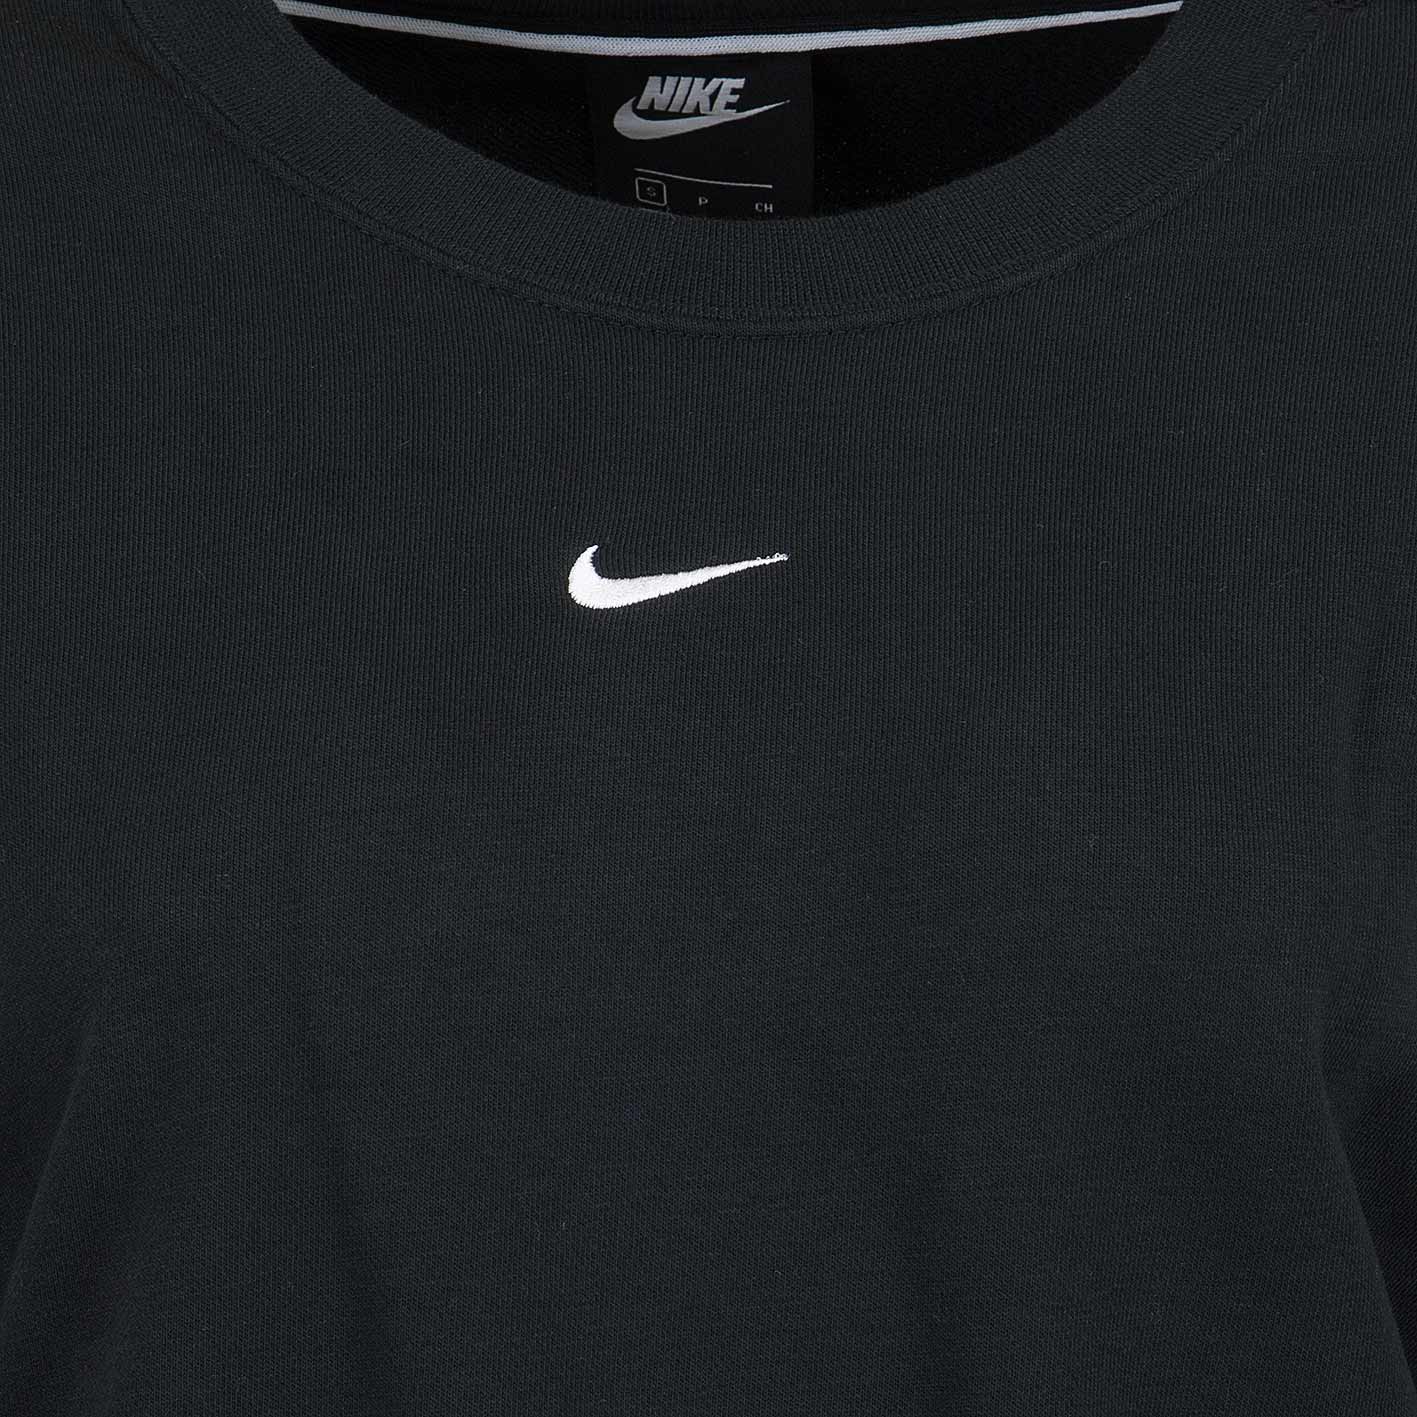 ☆ Nike Damen Sweatshirt Logo Tape schwarz/weiß - hier bestellen!